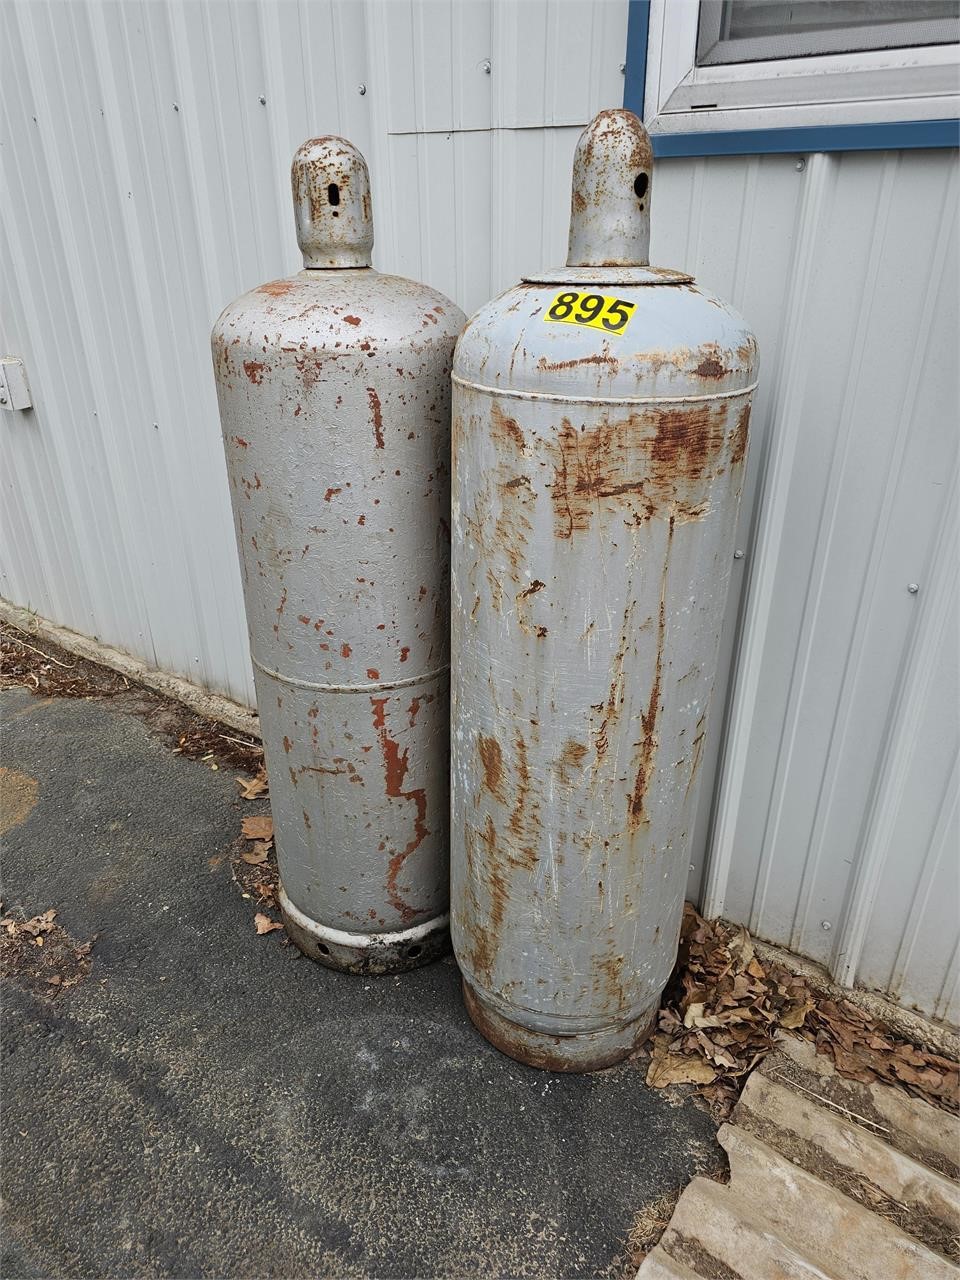 Large propane tanks